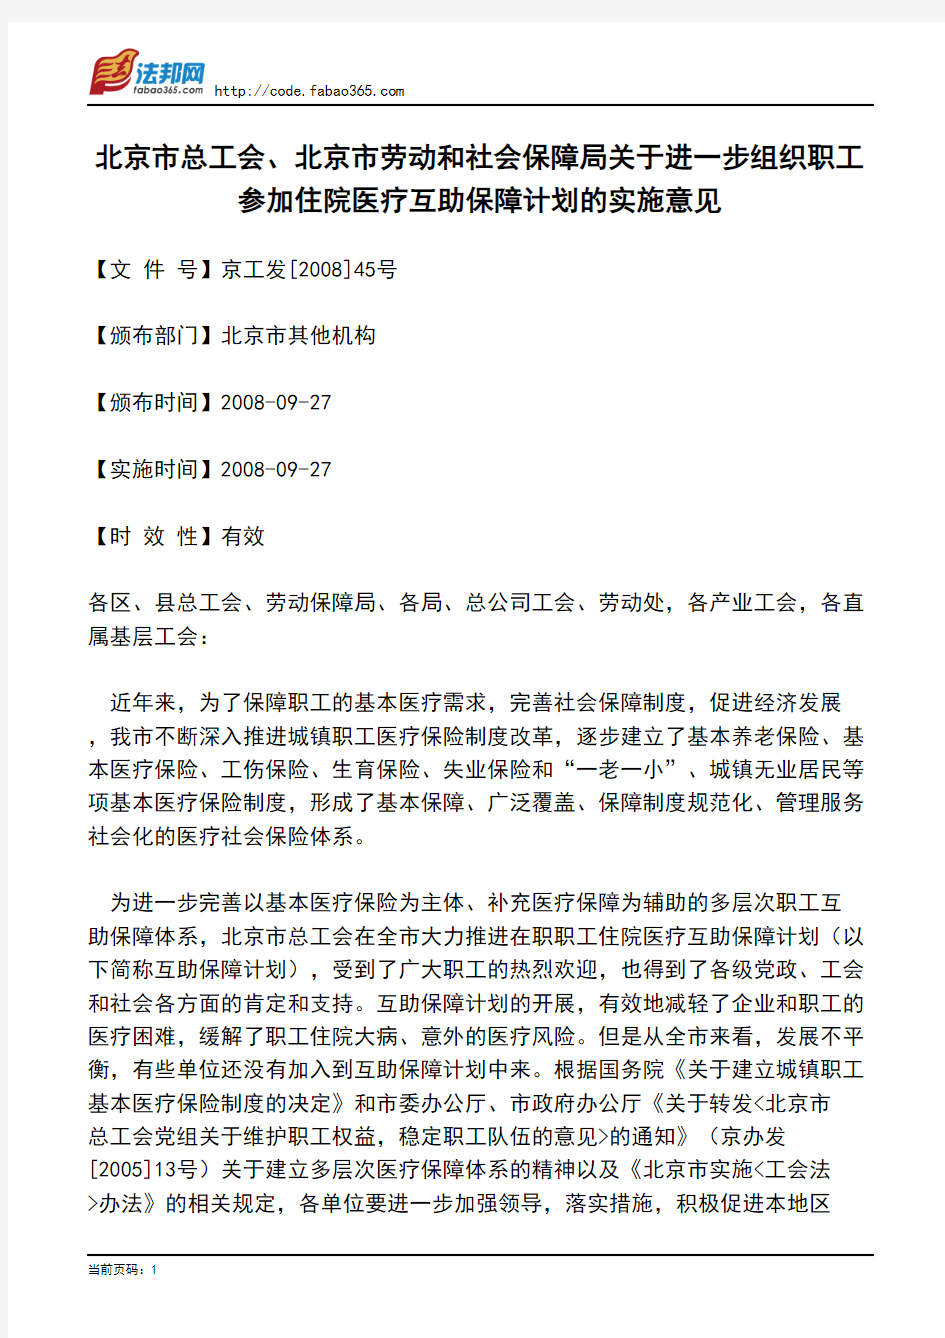 北京市总工会、北京市劳动和社会保障局关于进一步组织职工参加住院医疗互助保障计划的实施意见